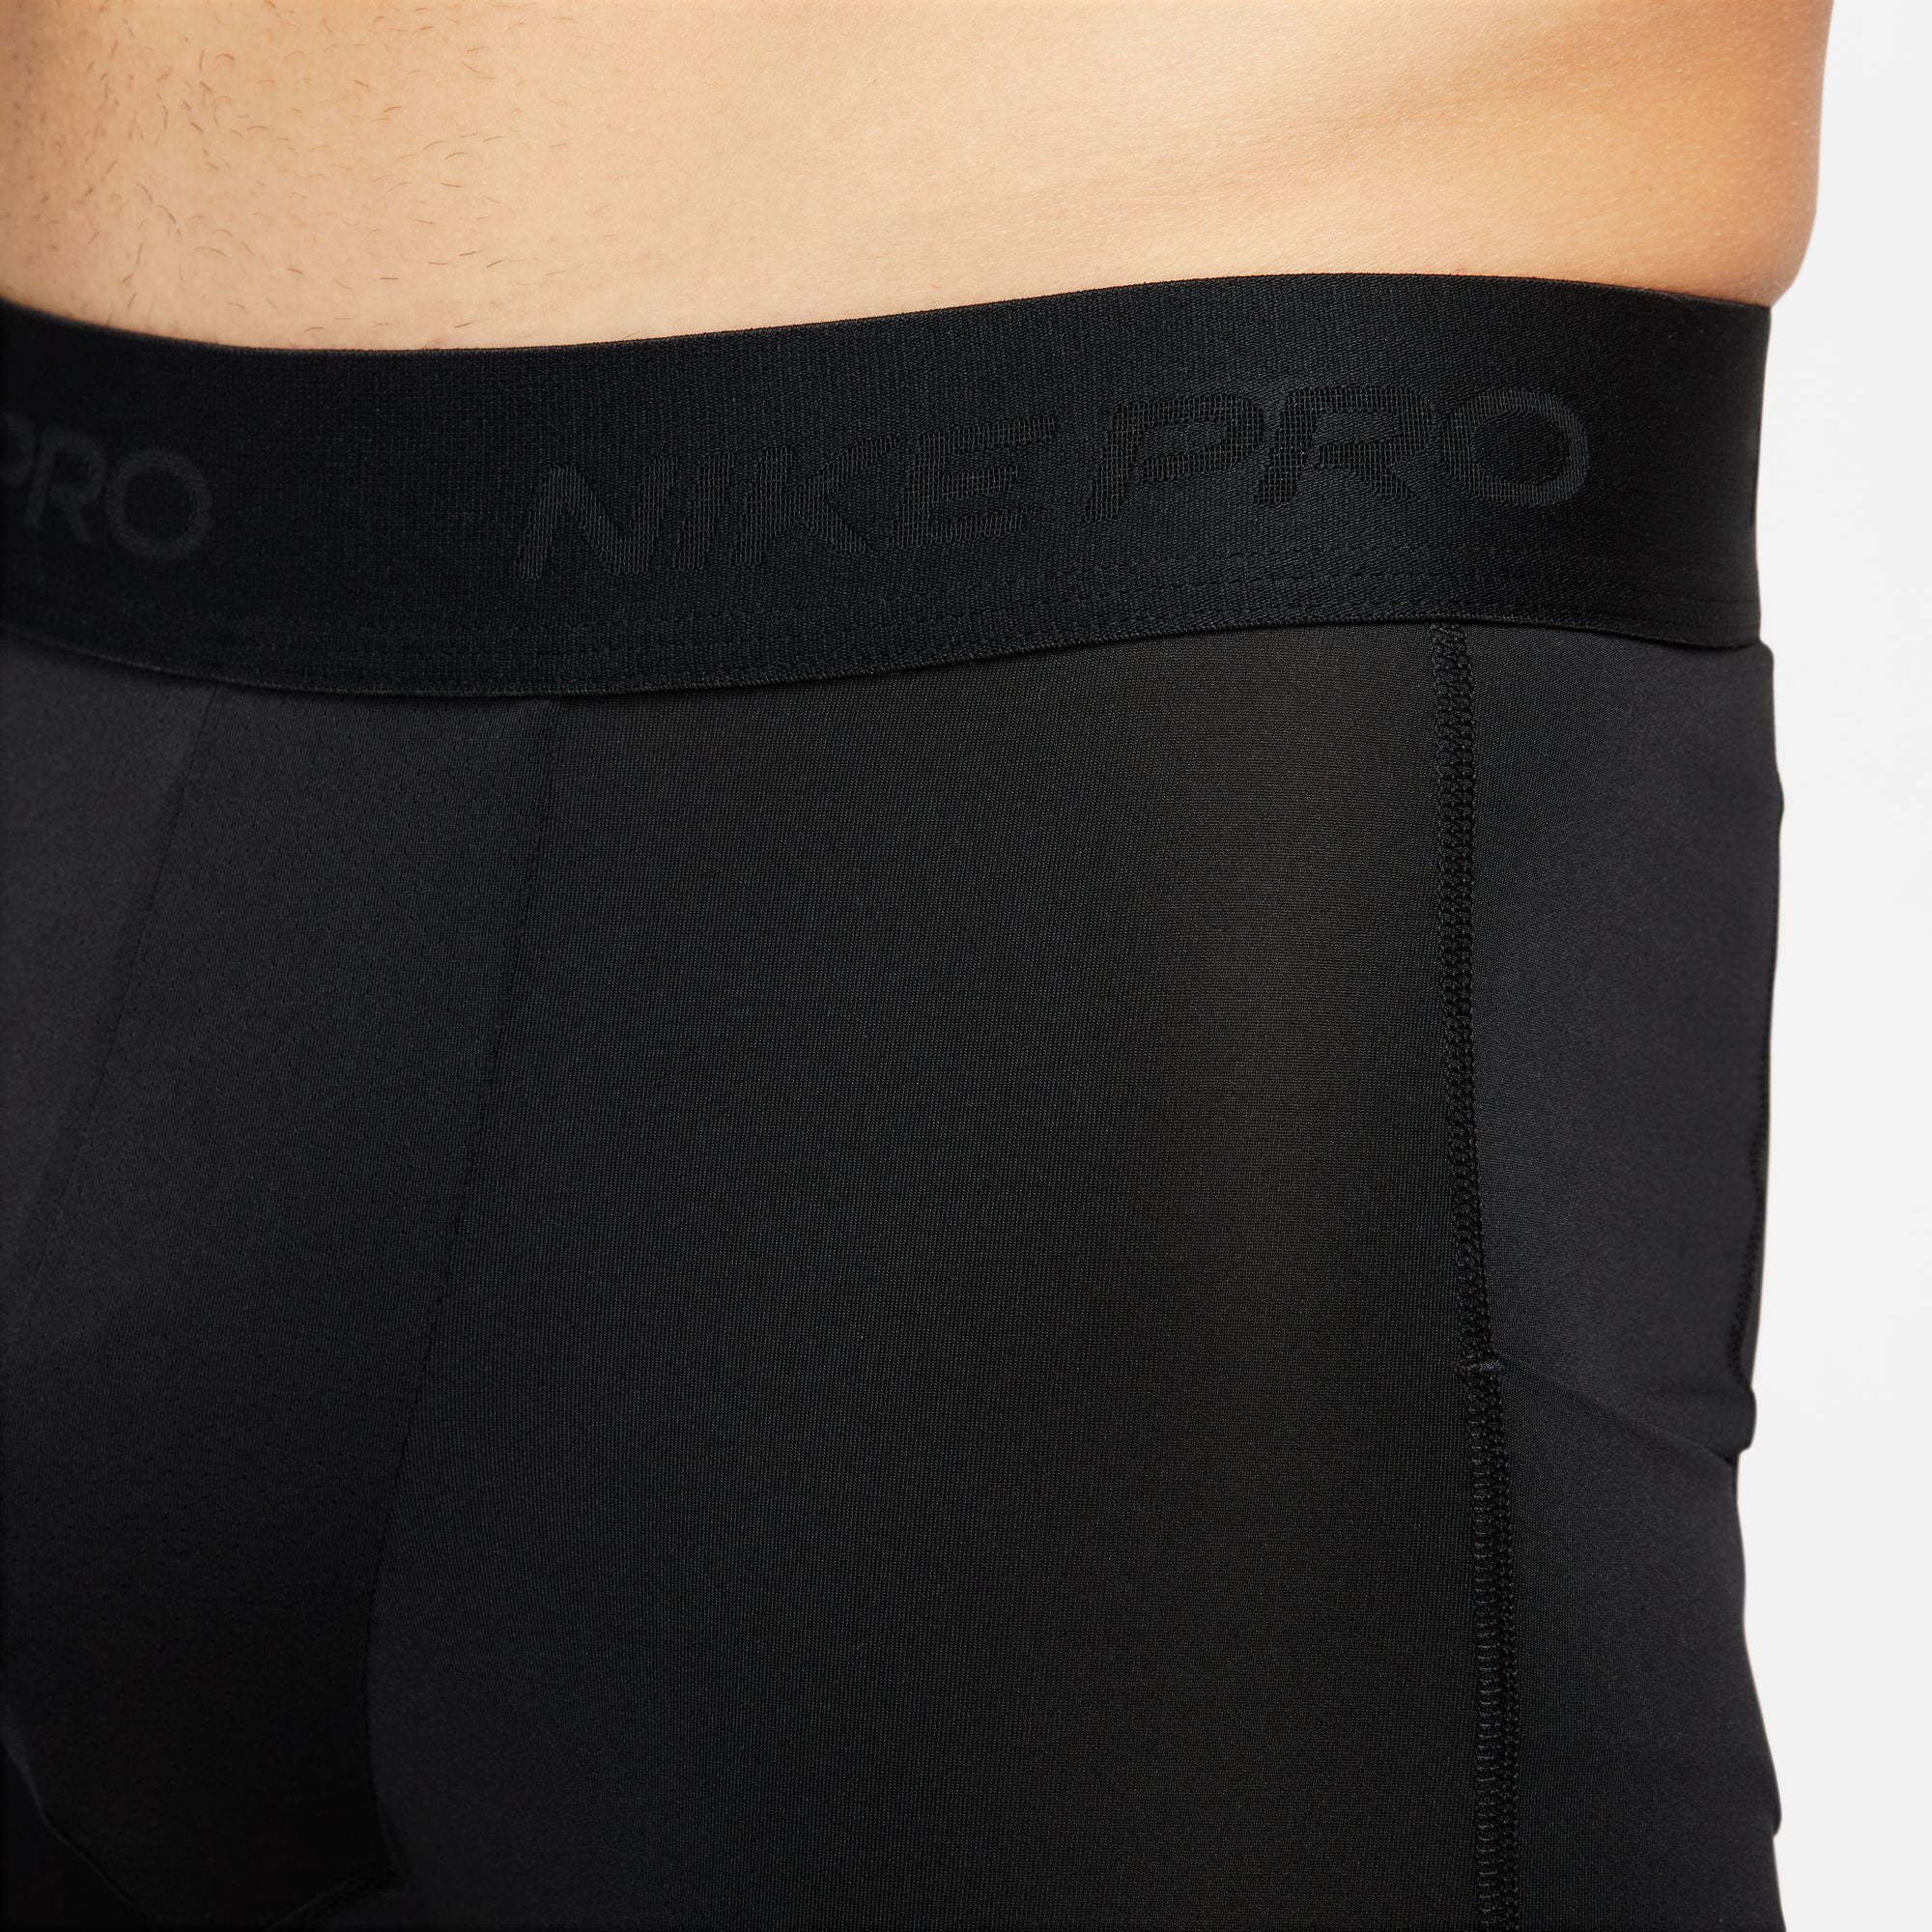 Nike Pro Men's Shorts FB7958-010